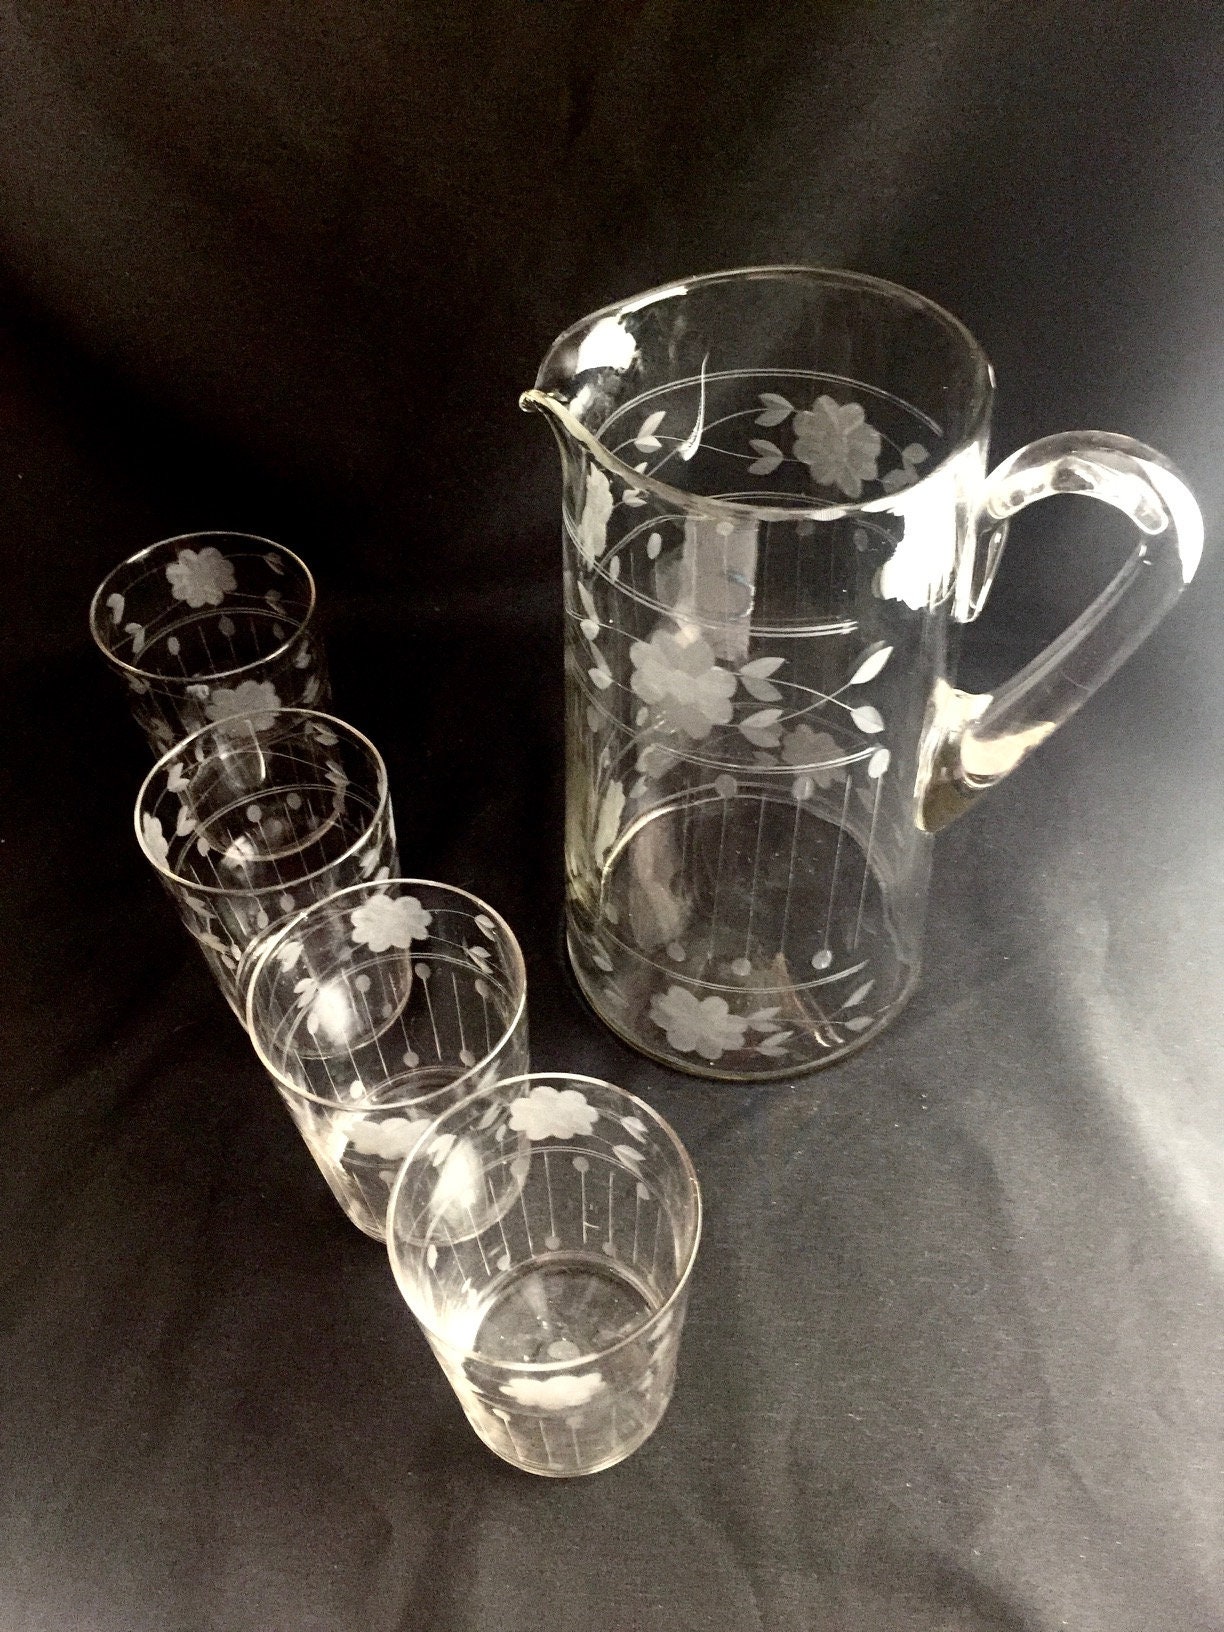 Blendo Juice Pitcher 4 Glasses Set Vintage West Virginia Glass - Ruby Lane